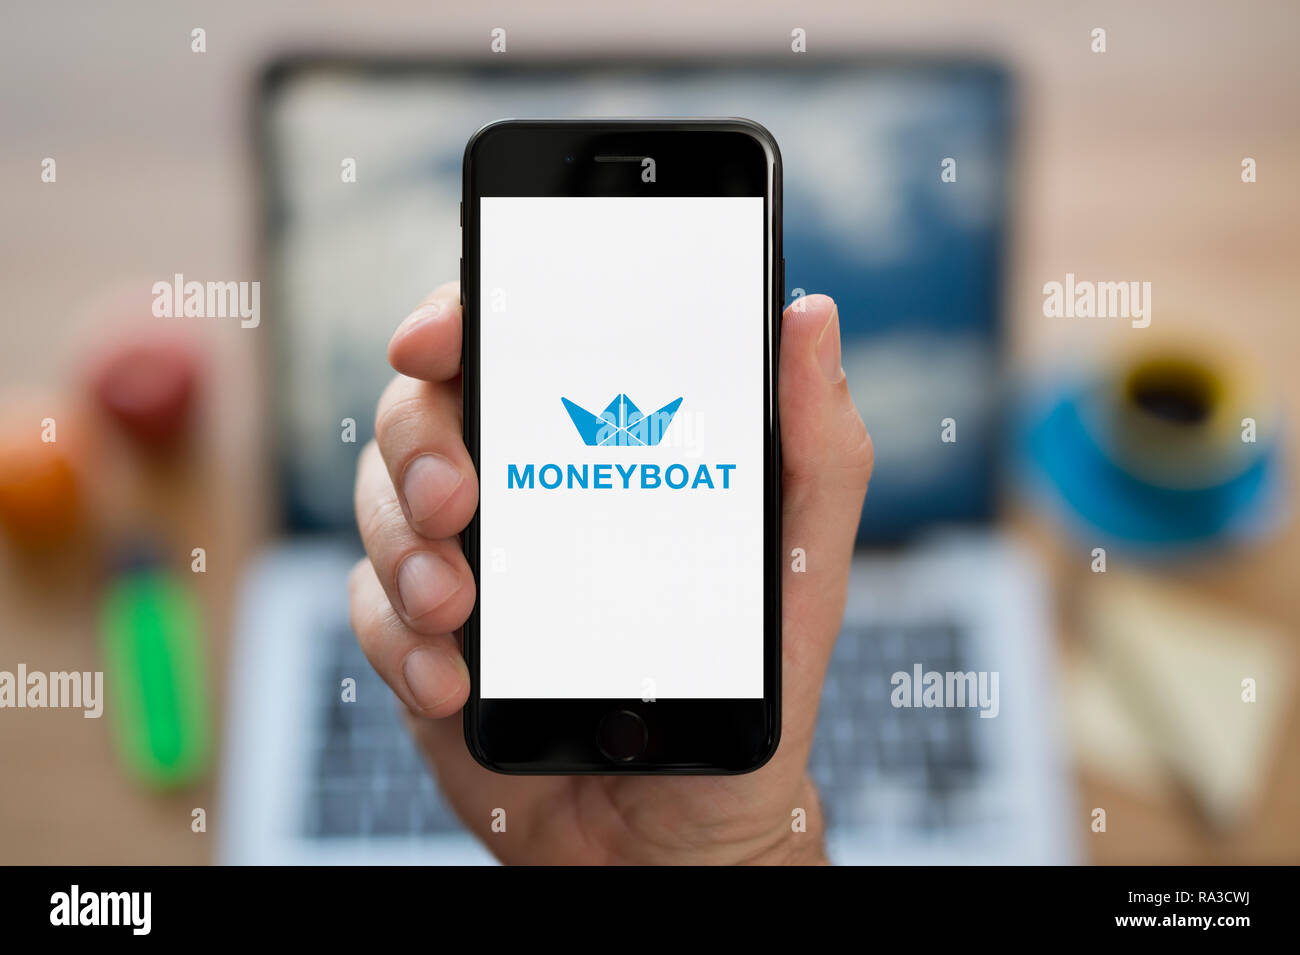 Un uomo guarda al suo iPhone che visualizza il logo Moneyboat (solo uso editoriale). Foto Stock